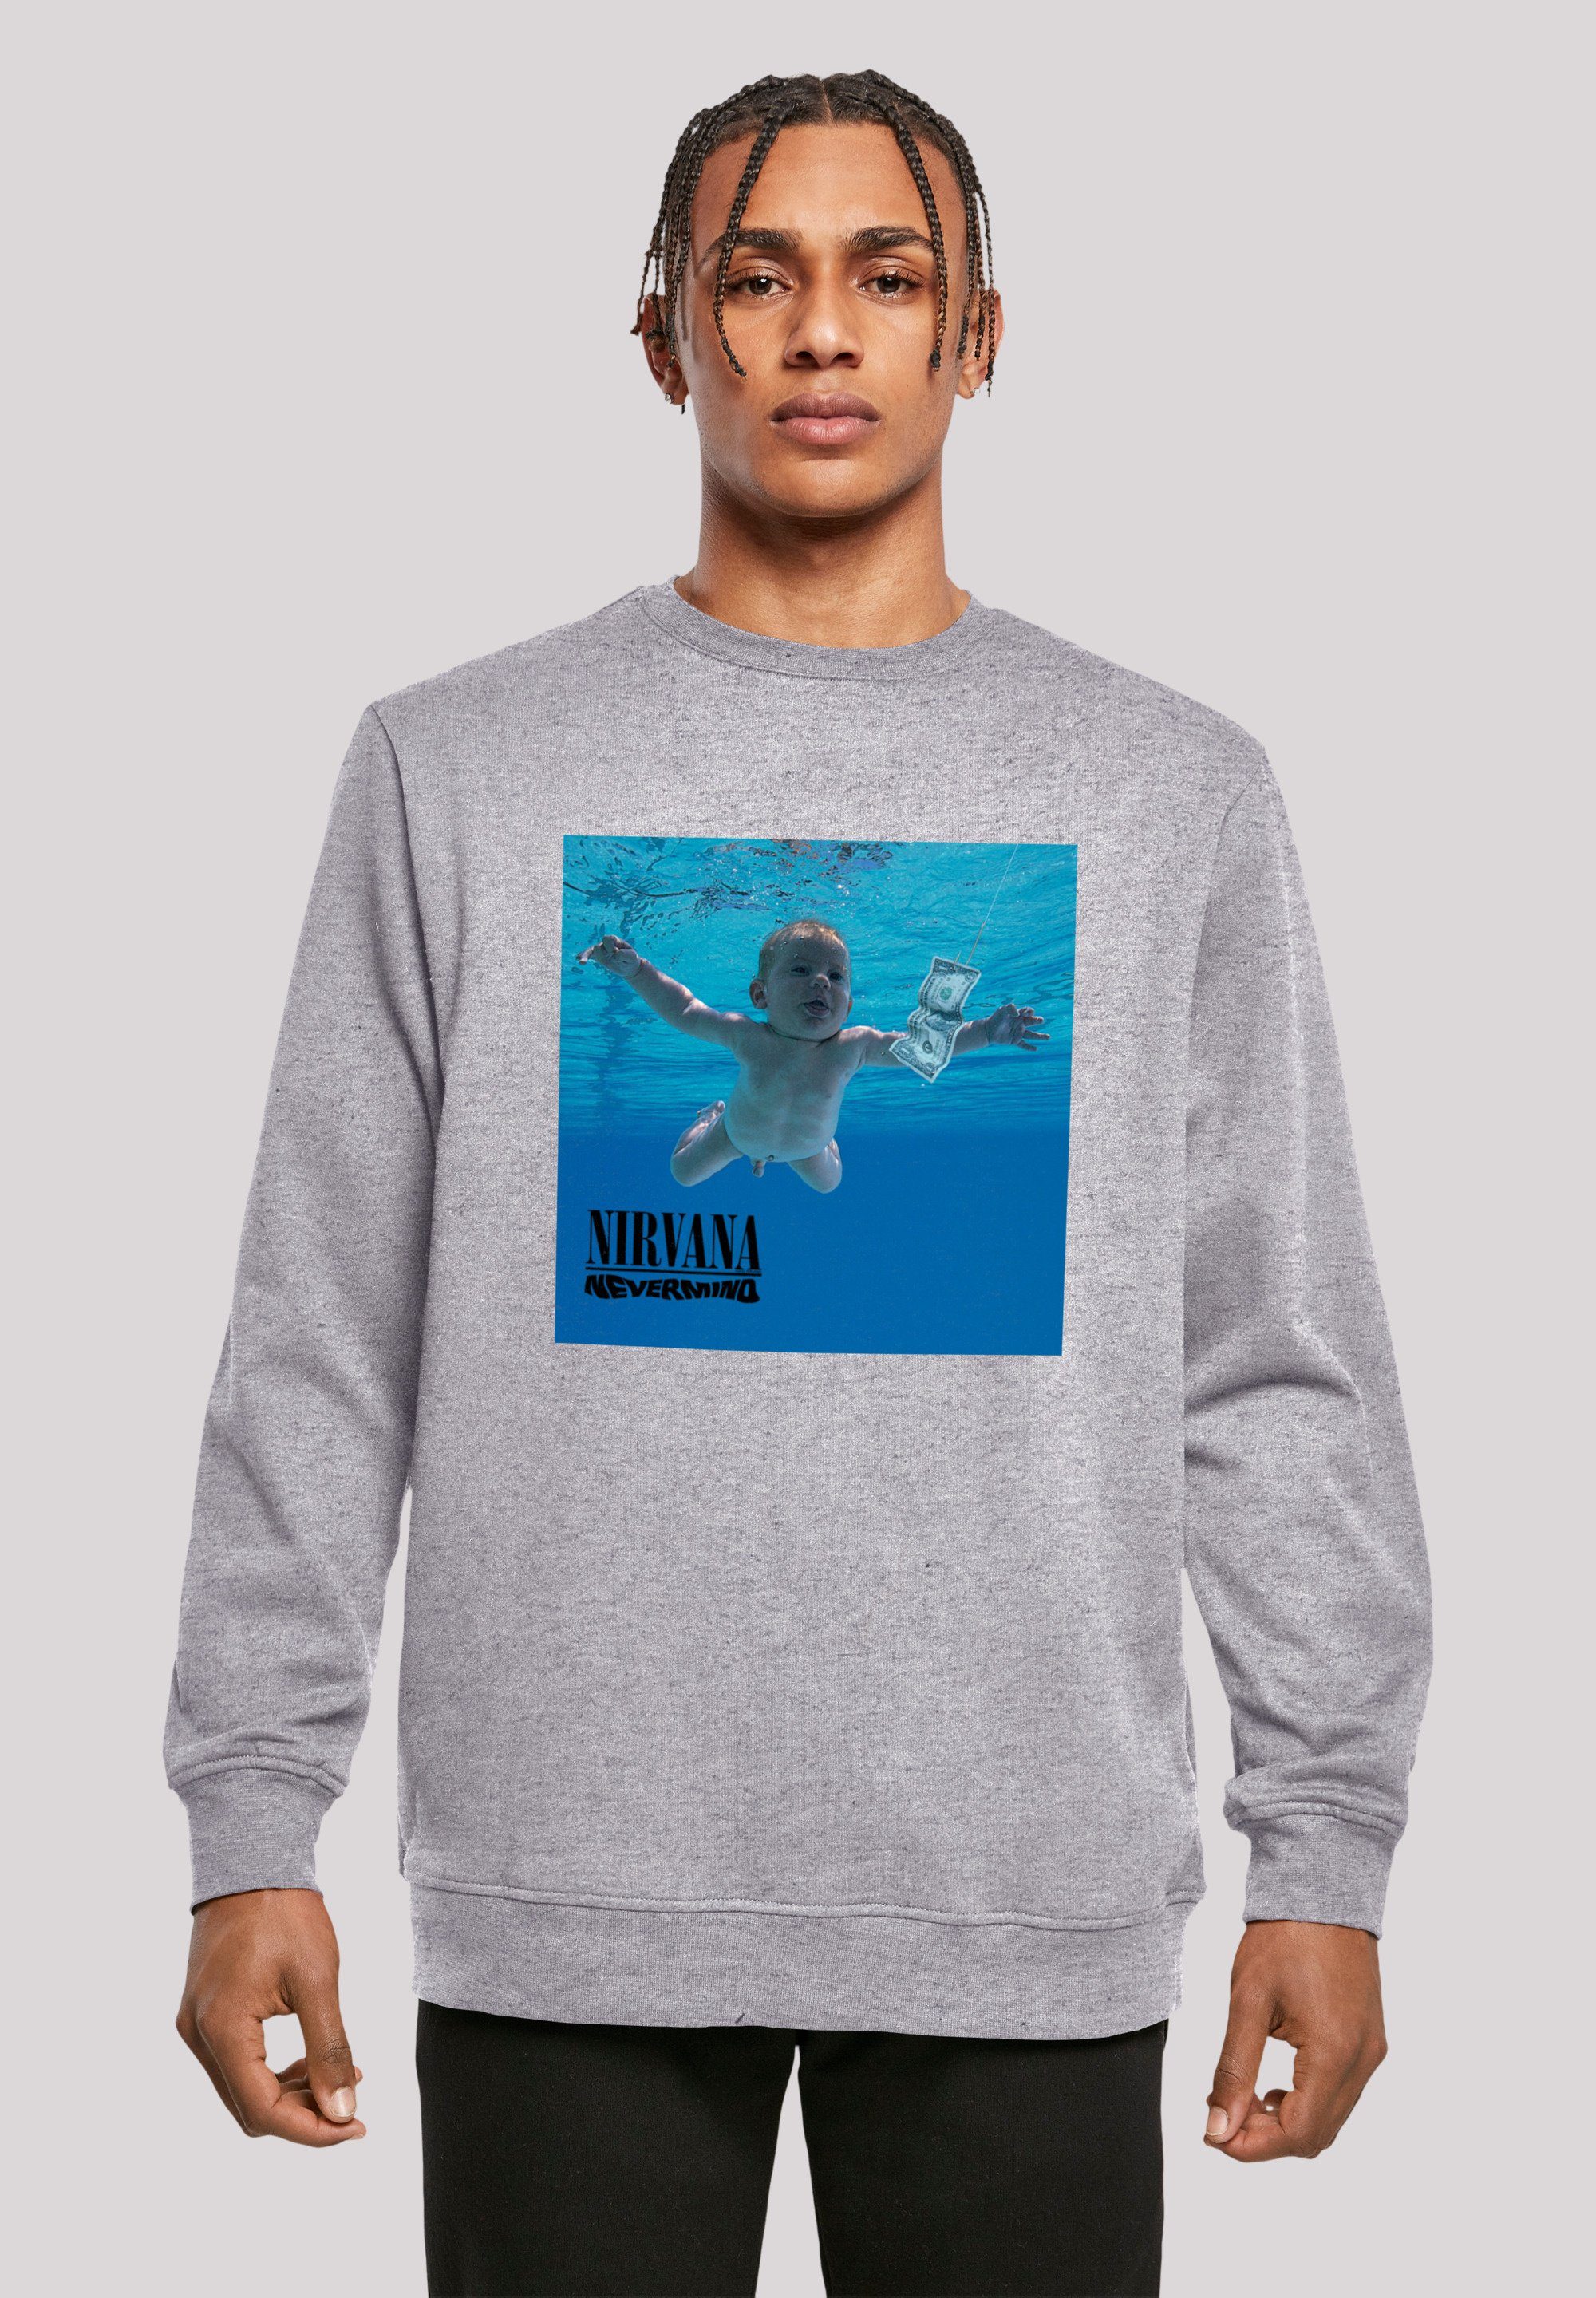 Bequemer Nirvana entspanntem Rock Tragekomfort Schnitt Qualität, mit Sweatshirt Nevermind Premium Album F4NT4STIC Band